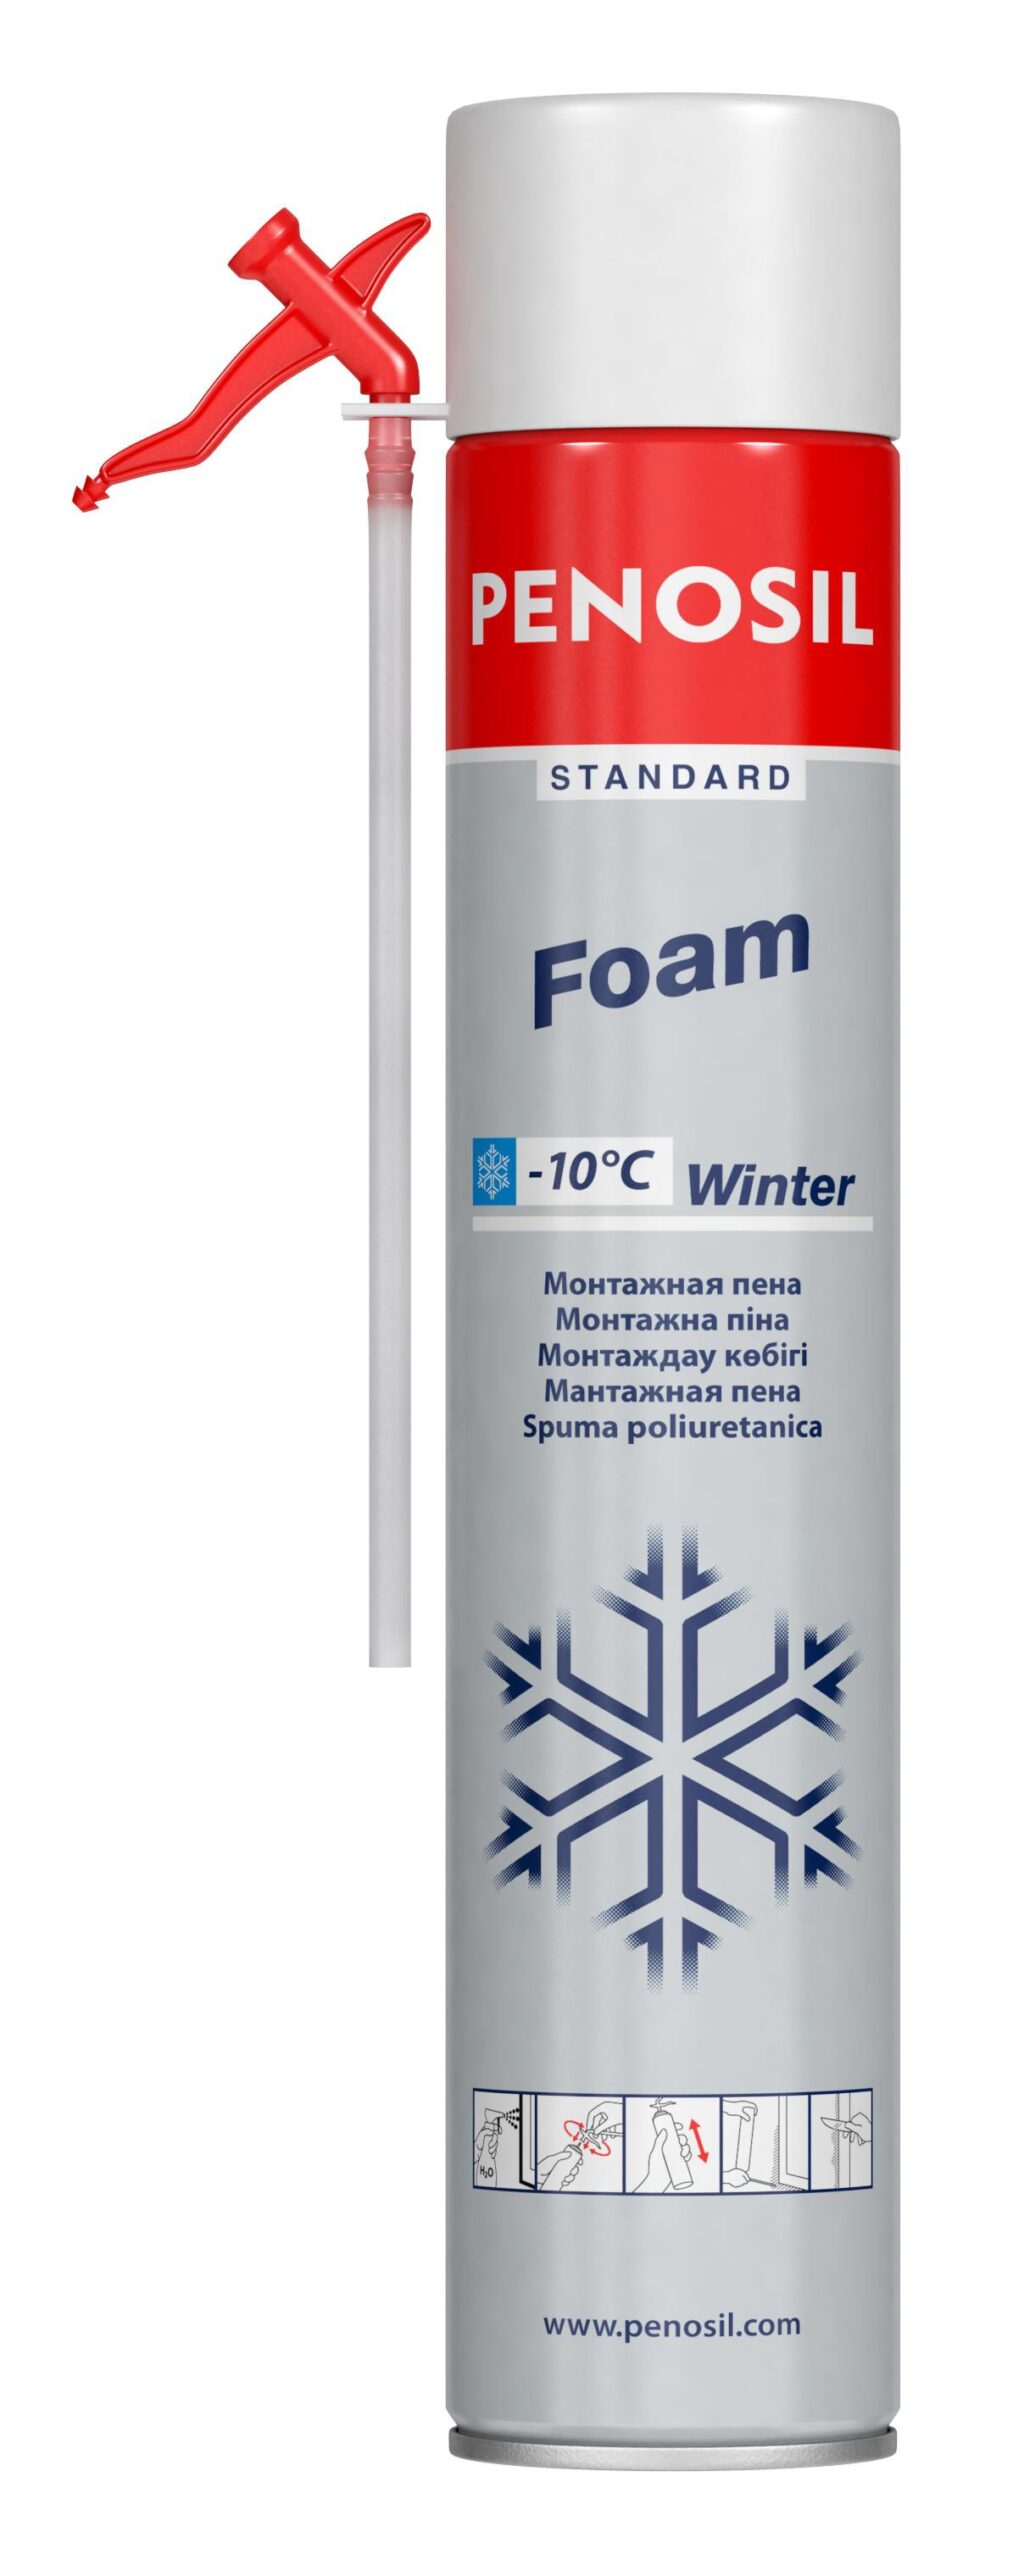 Изоляционная пена PENOSIL Standard Foam Winter с трубочкой-аппликатором для работ в зимнее время.